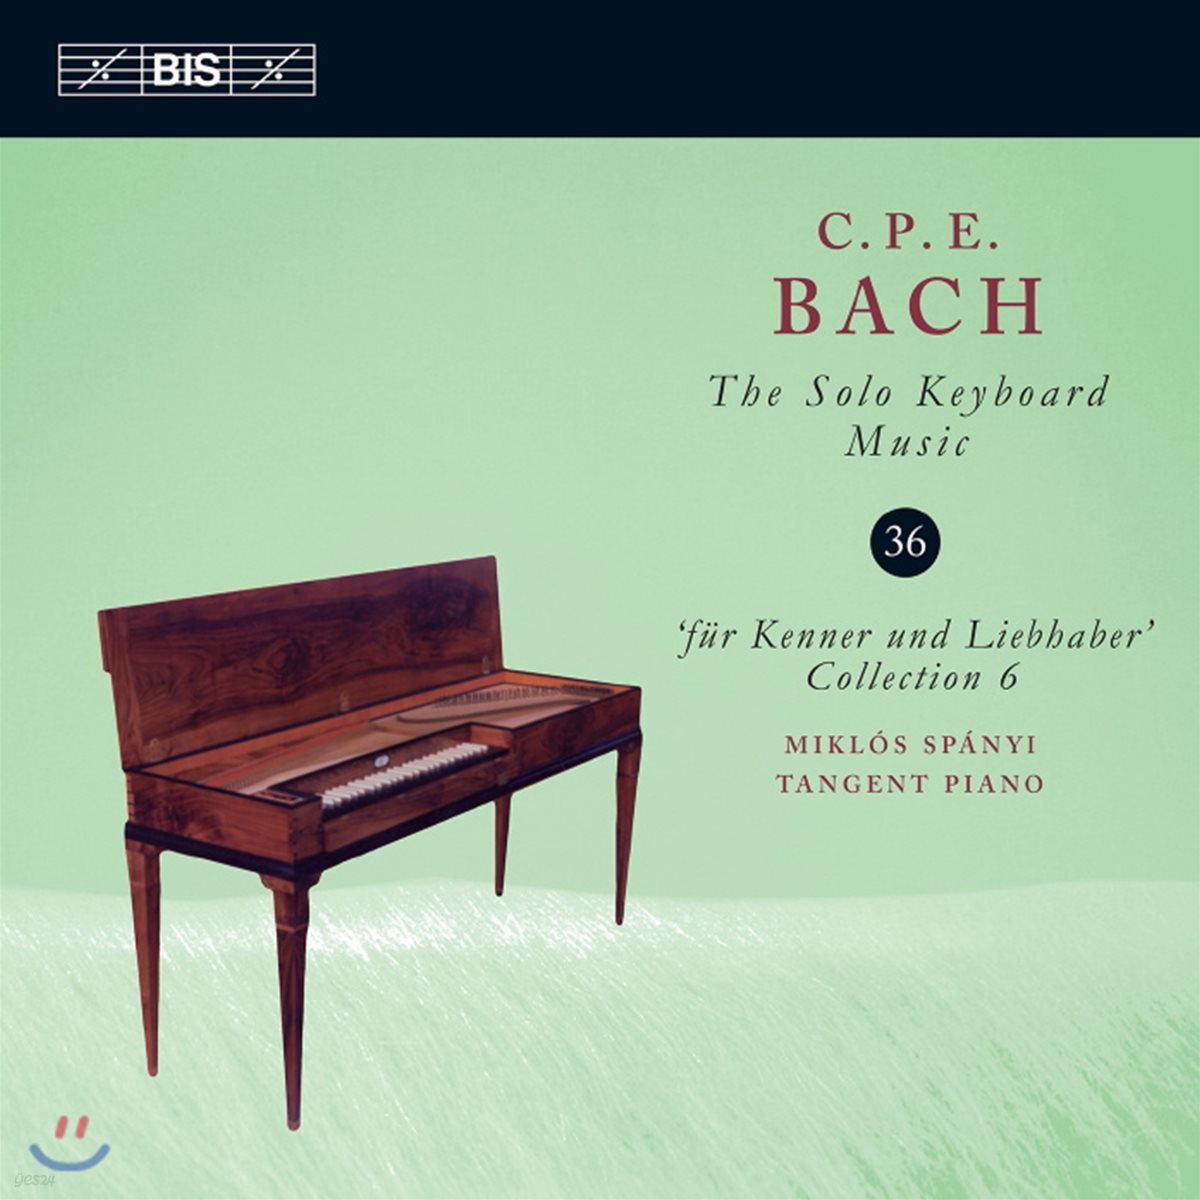 Miklos Spanyi 칼 필립 에마누엘 바흐: 솔로 키보드 음악 36집 (C.P.E. Bach: Solo Keyboard Music Vol.36)